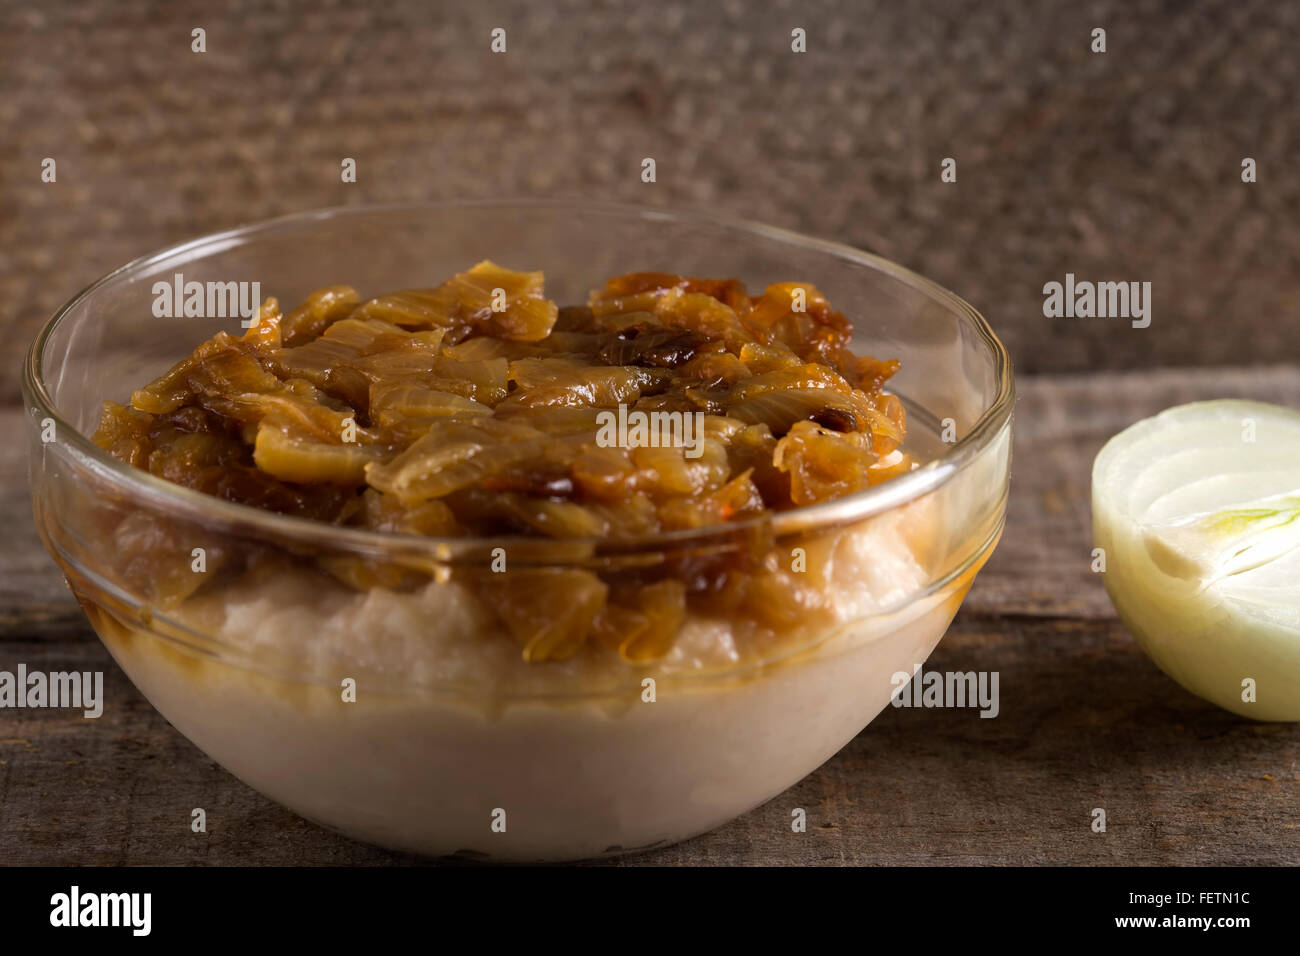 La nourriture traditionnelle purée de haricots 'iahnie' avec des oignons frits, au-dessus, dans un bol transparent Banque D'Images